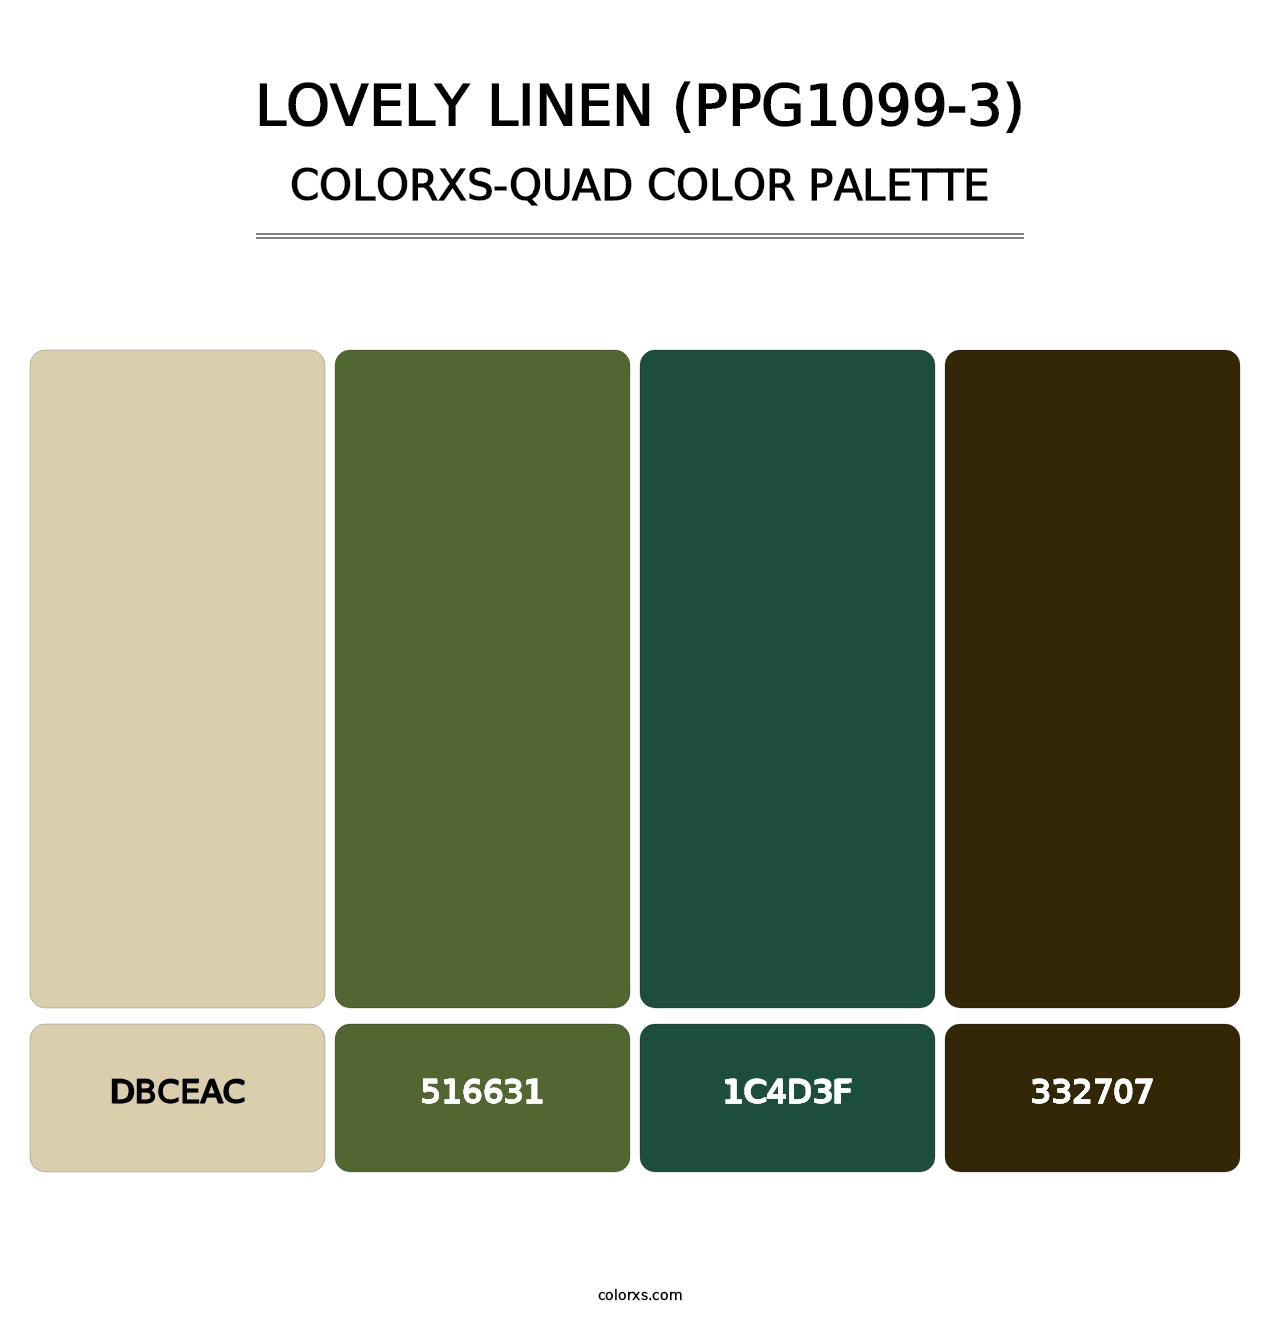 Lovely Linen (PPG1099-3) - Colorxs Quad Palette